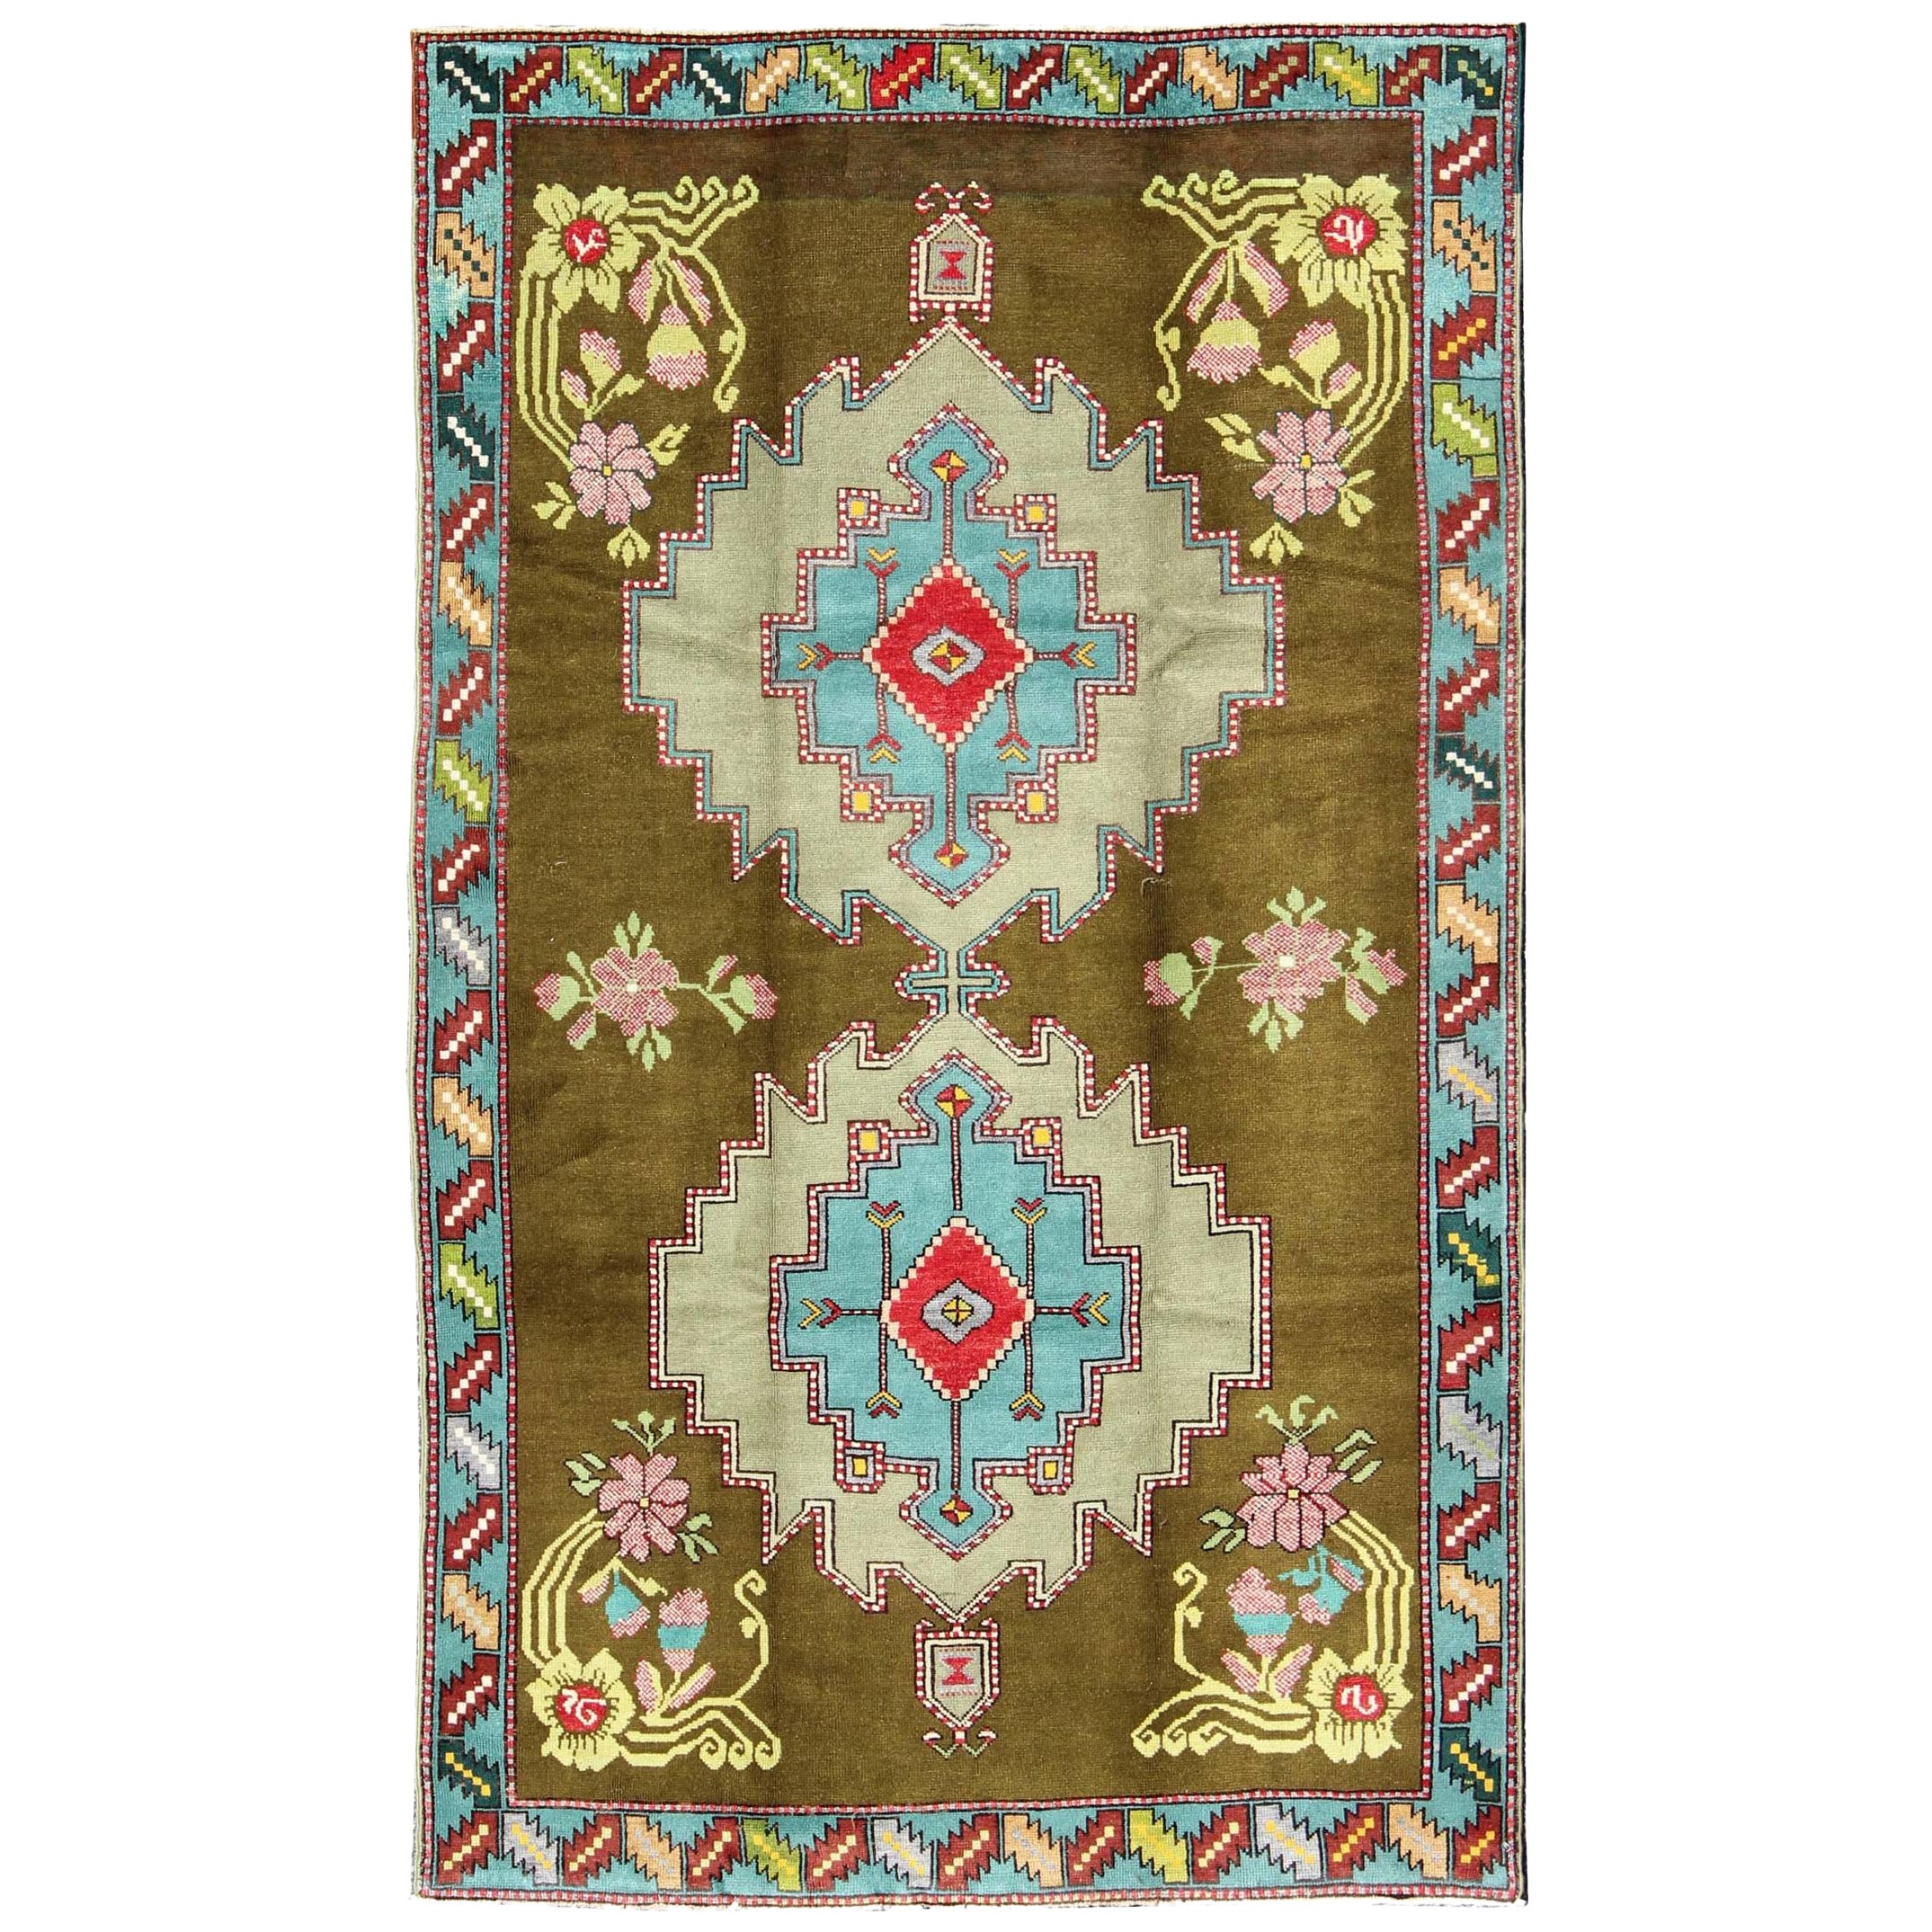 Bright Vintage Türkischer Teppich in grünen und einzigartigen lebhaften Farben und Design